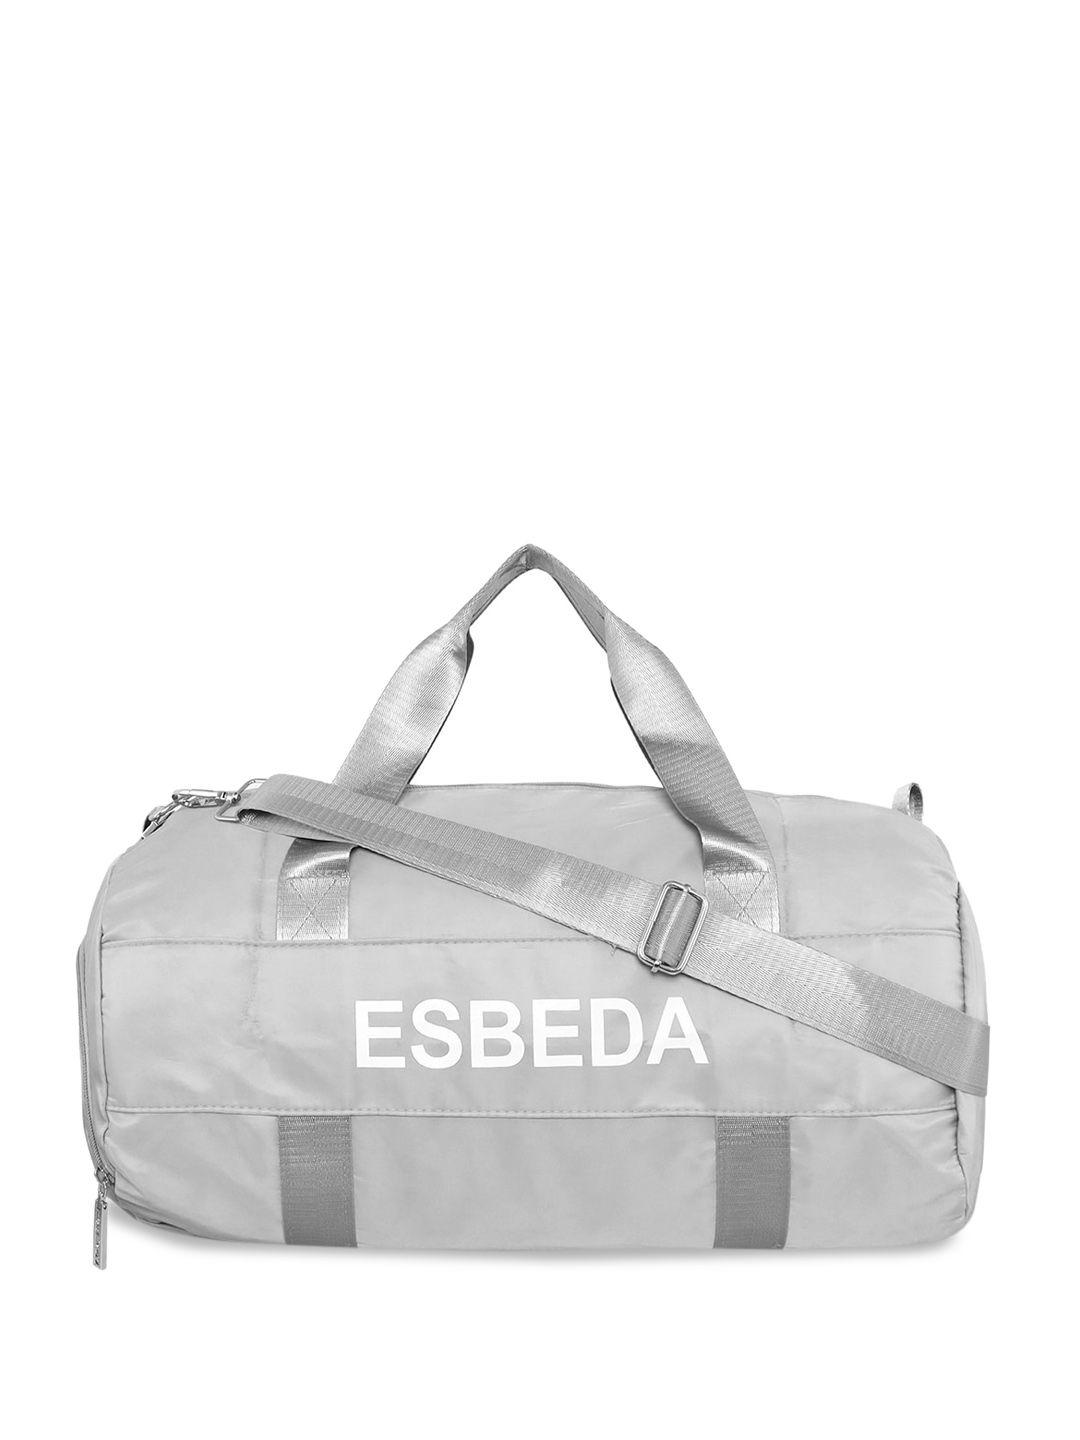 esbeda-brand-logo-gym-duffel-bag